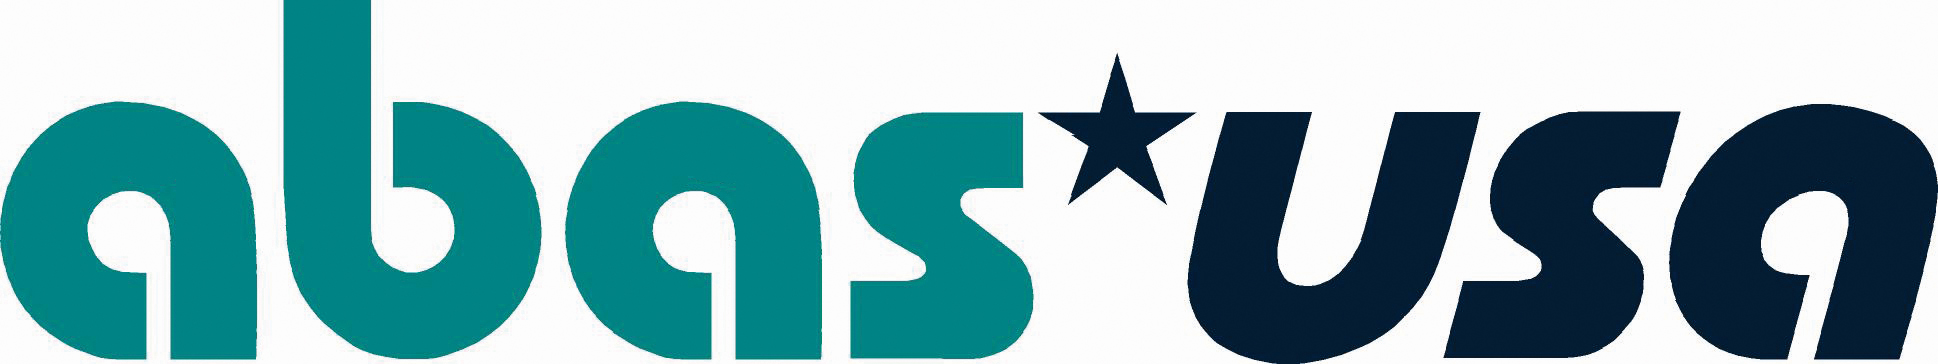 ABAS-USA Inc.